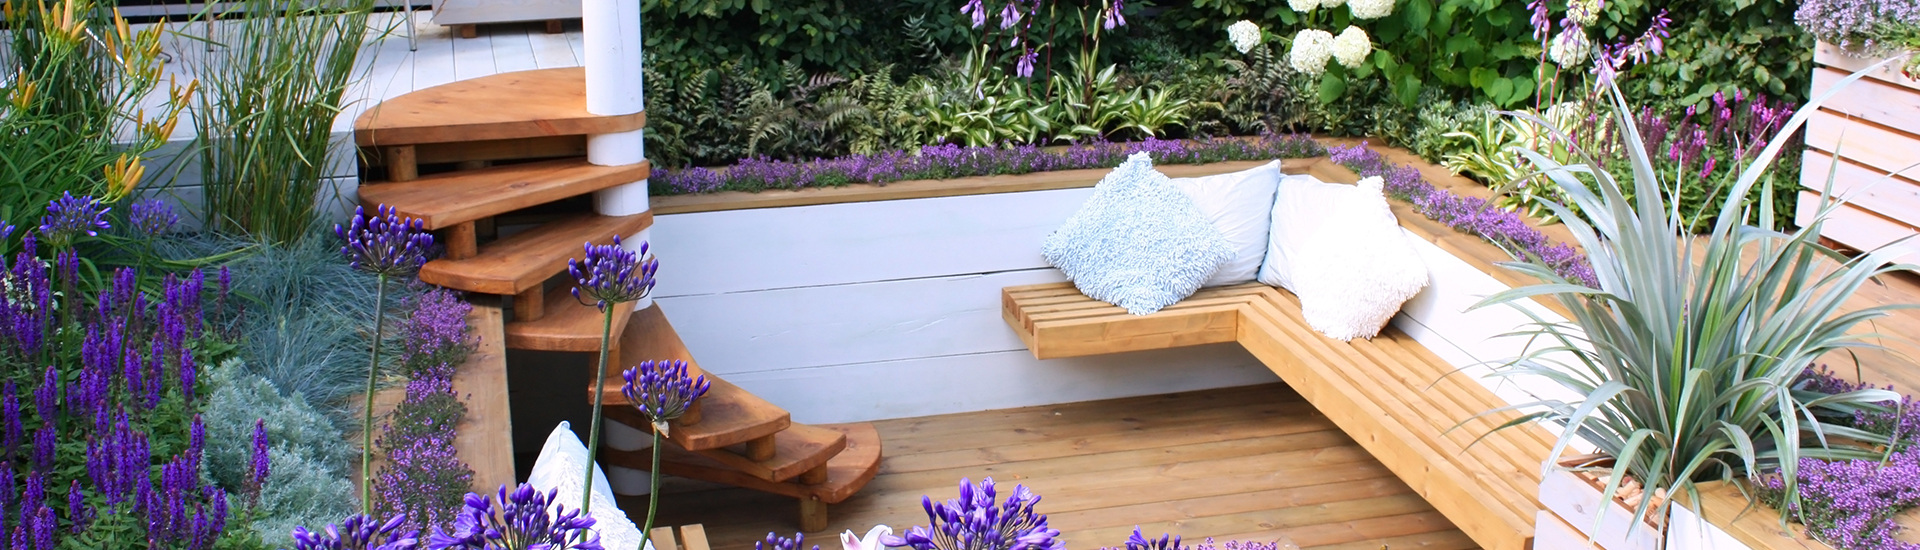 Treppe und Sitzbank aus Holz für einen kleinen Garten 